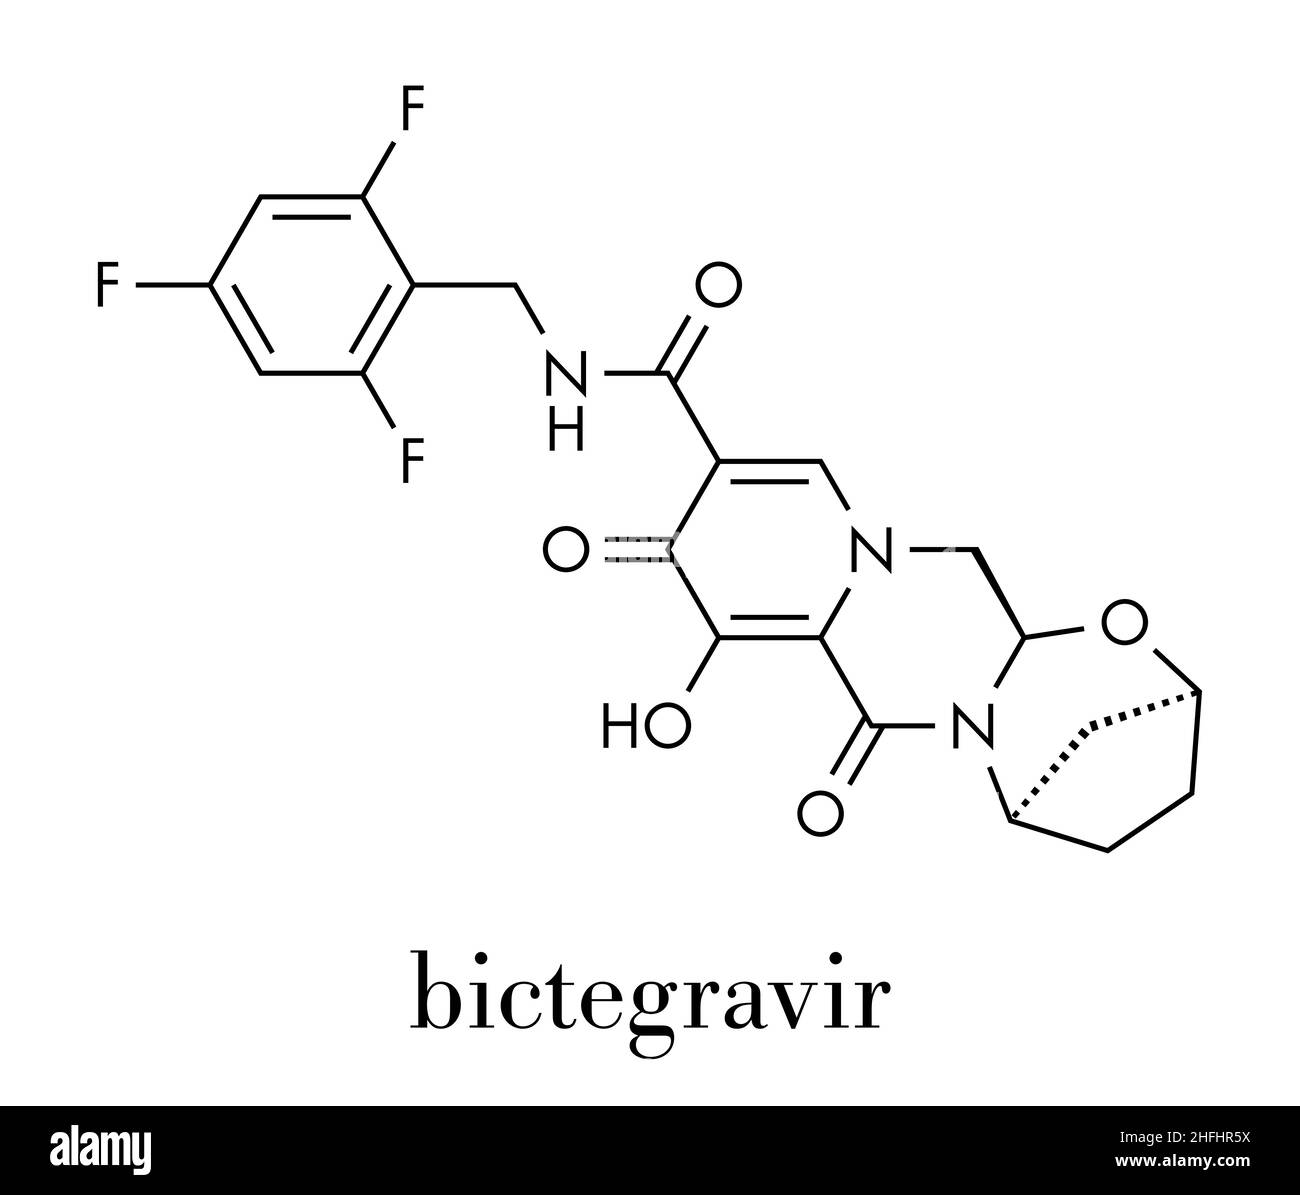 Bictegravir antivirales Medikament Molekül. Skelettmuskulatur Formel. Stock Vektor